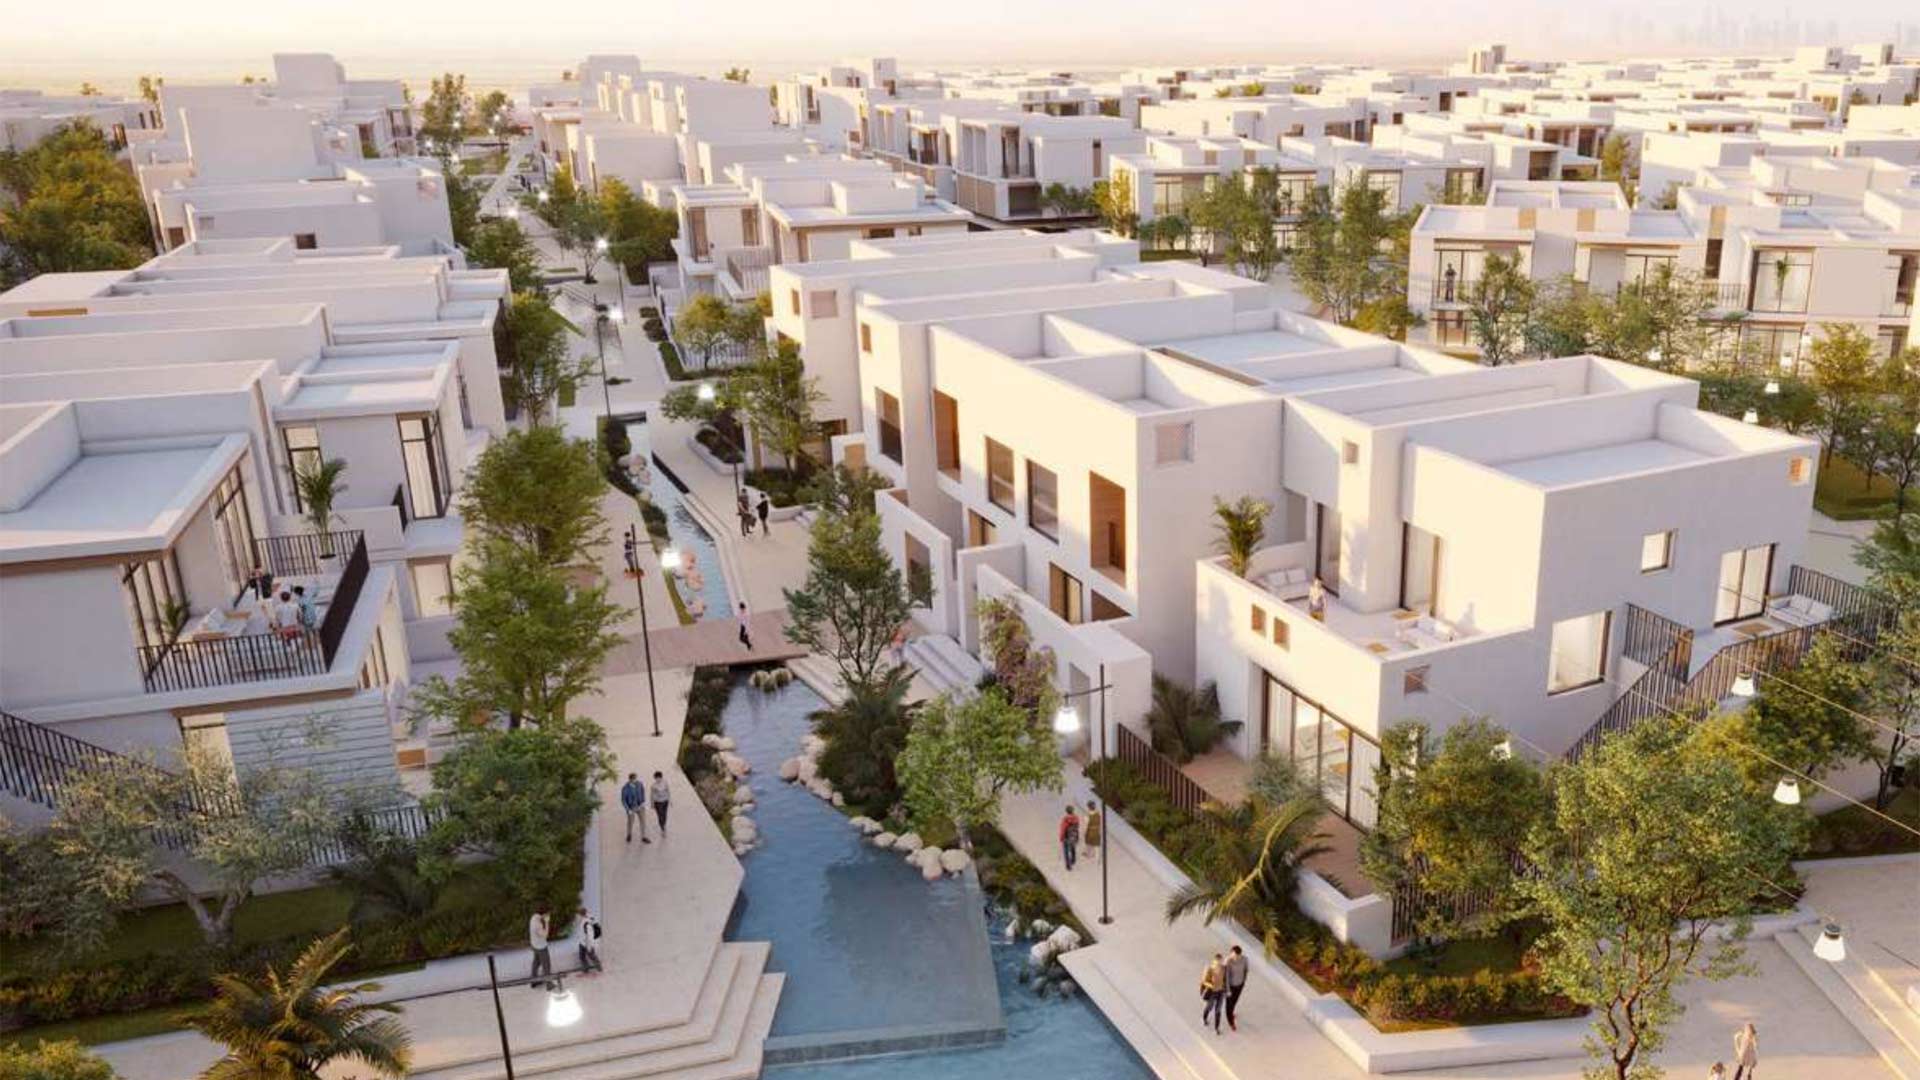 BLISS 2 TOWNHOUSES by Emaar Properties in Arabian Ranches 3, Dubai, UAE